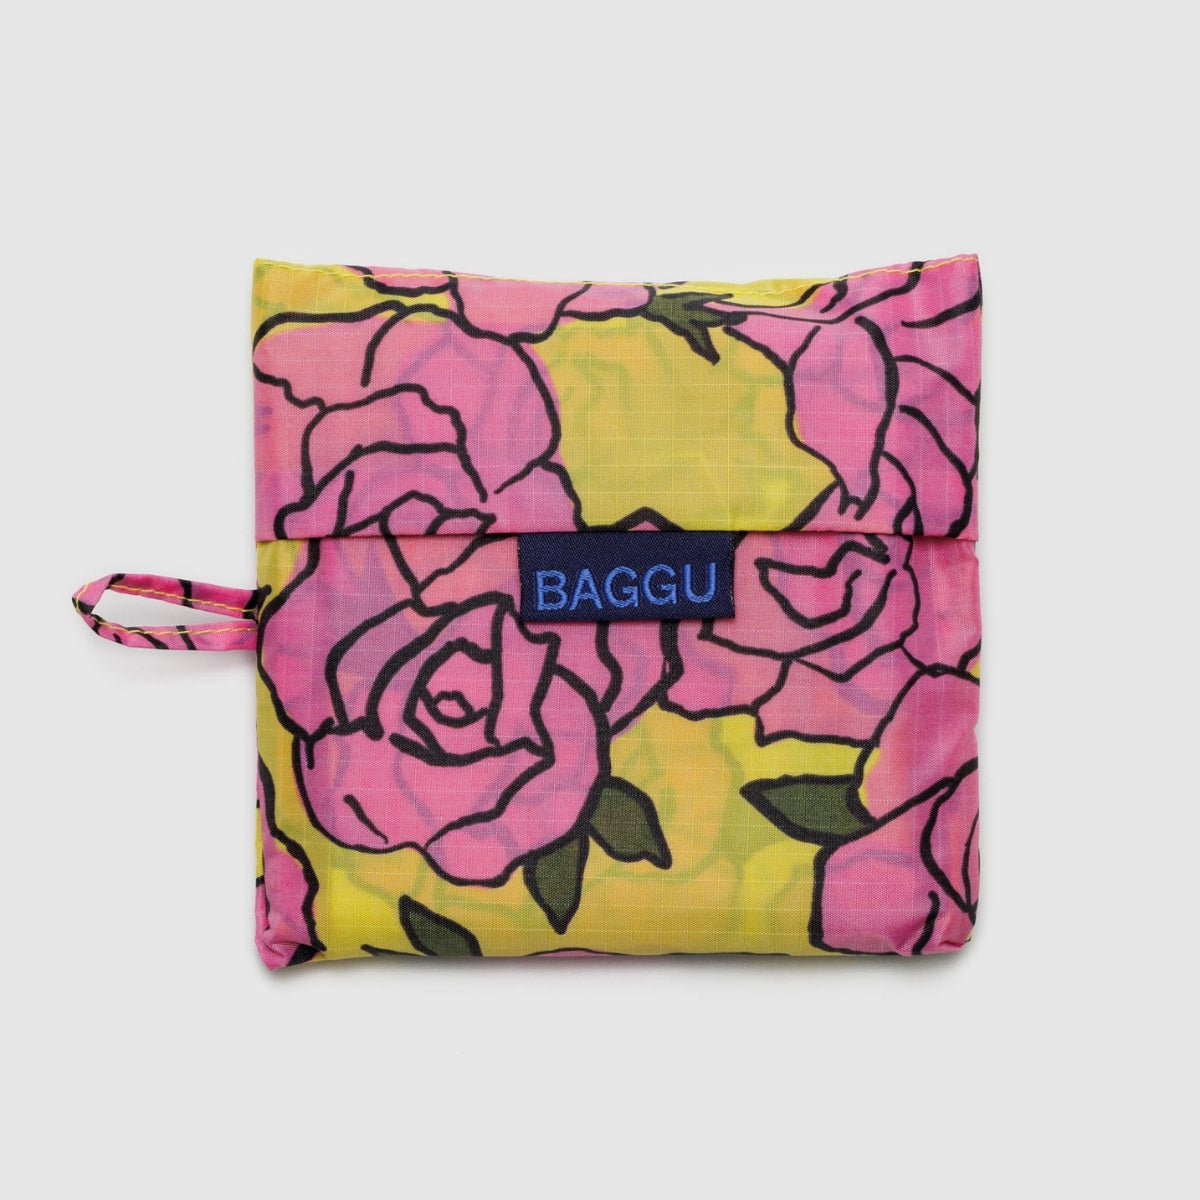 Baggu Standard Bag in Rose